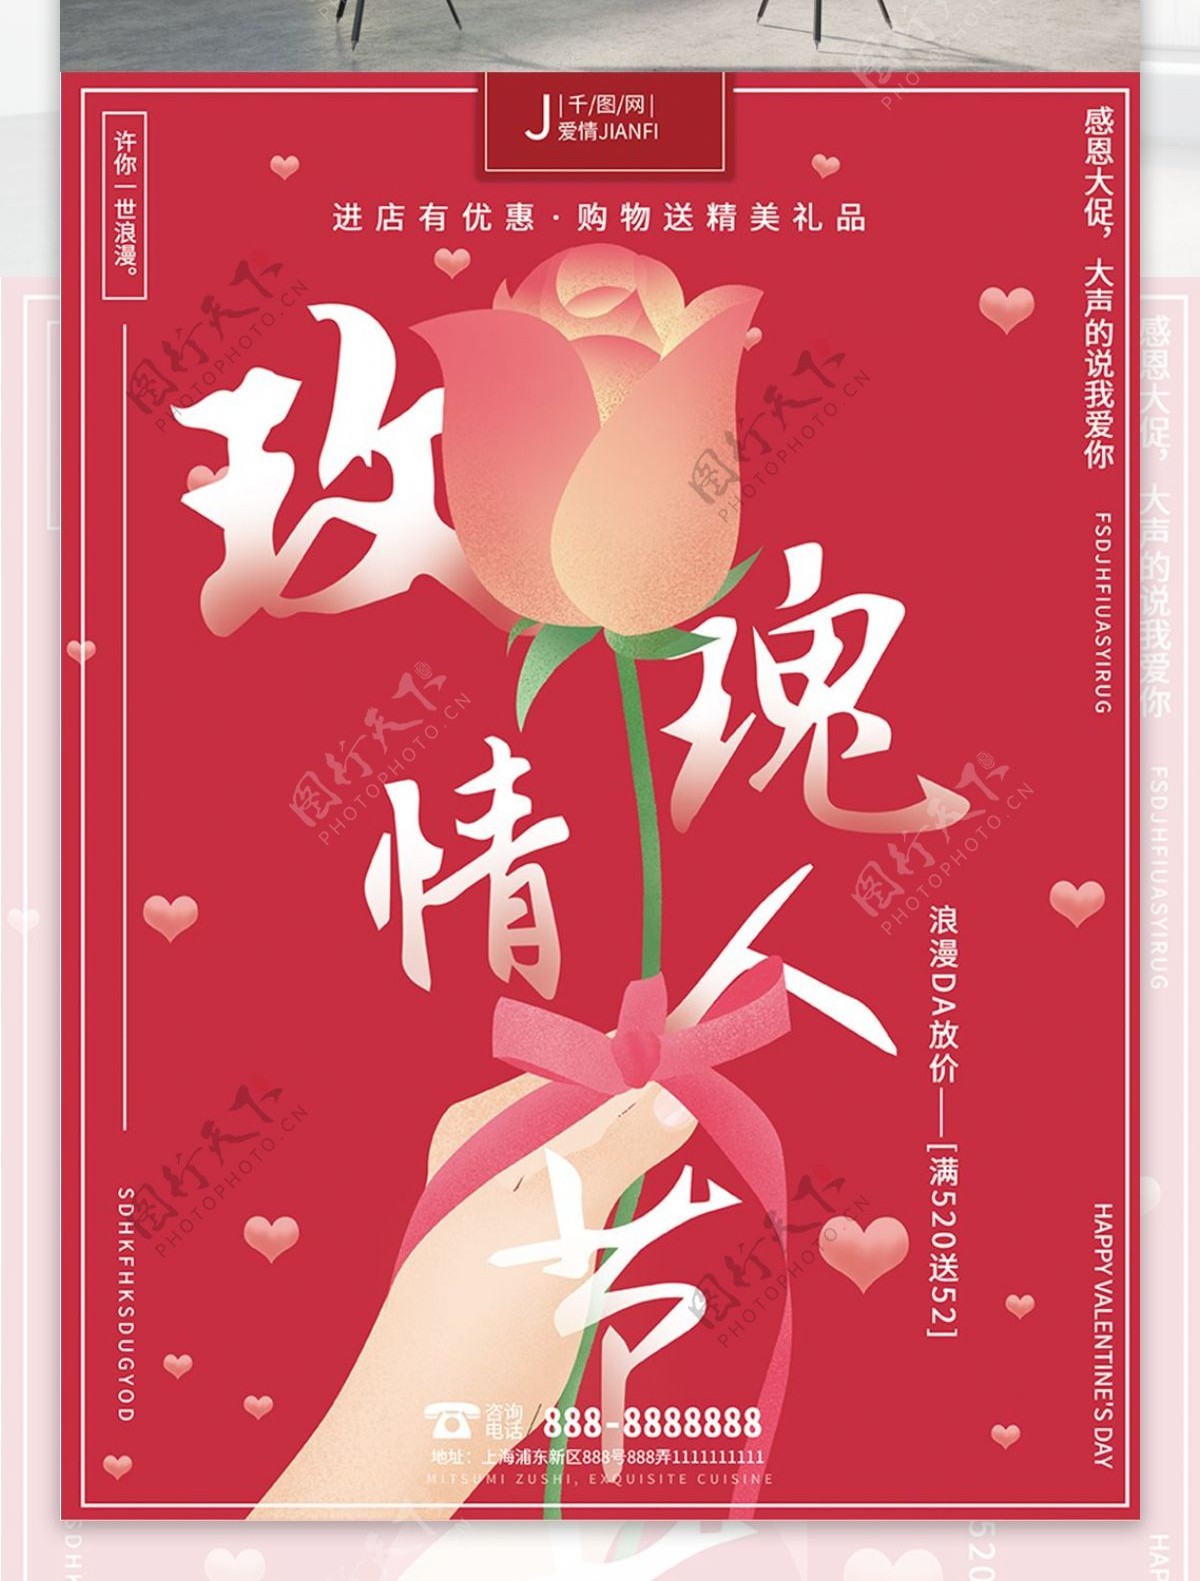 原创手绘浪漫温馨唯美520玫瑰情人节海报